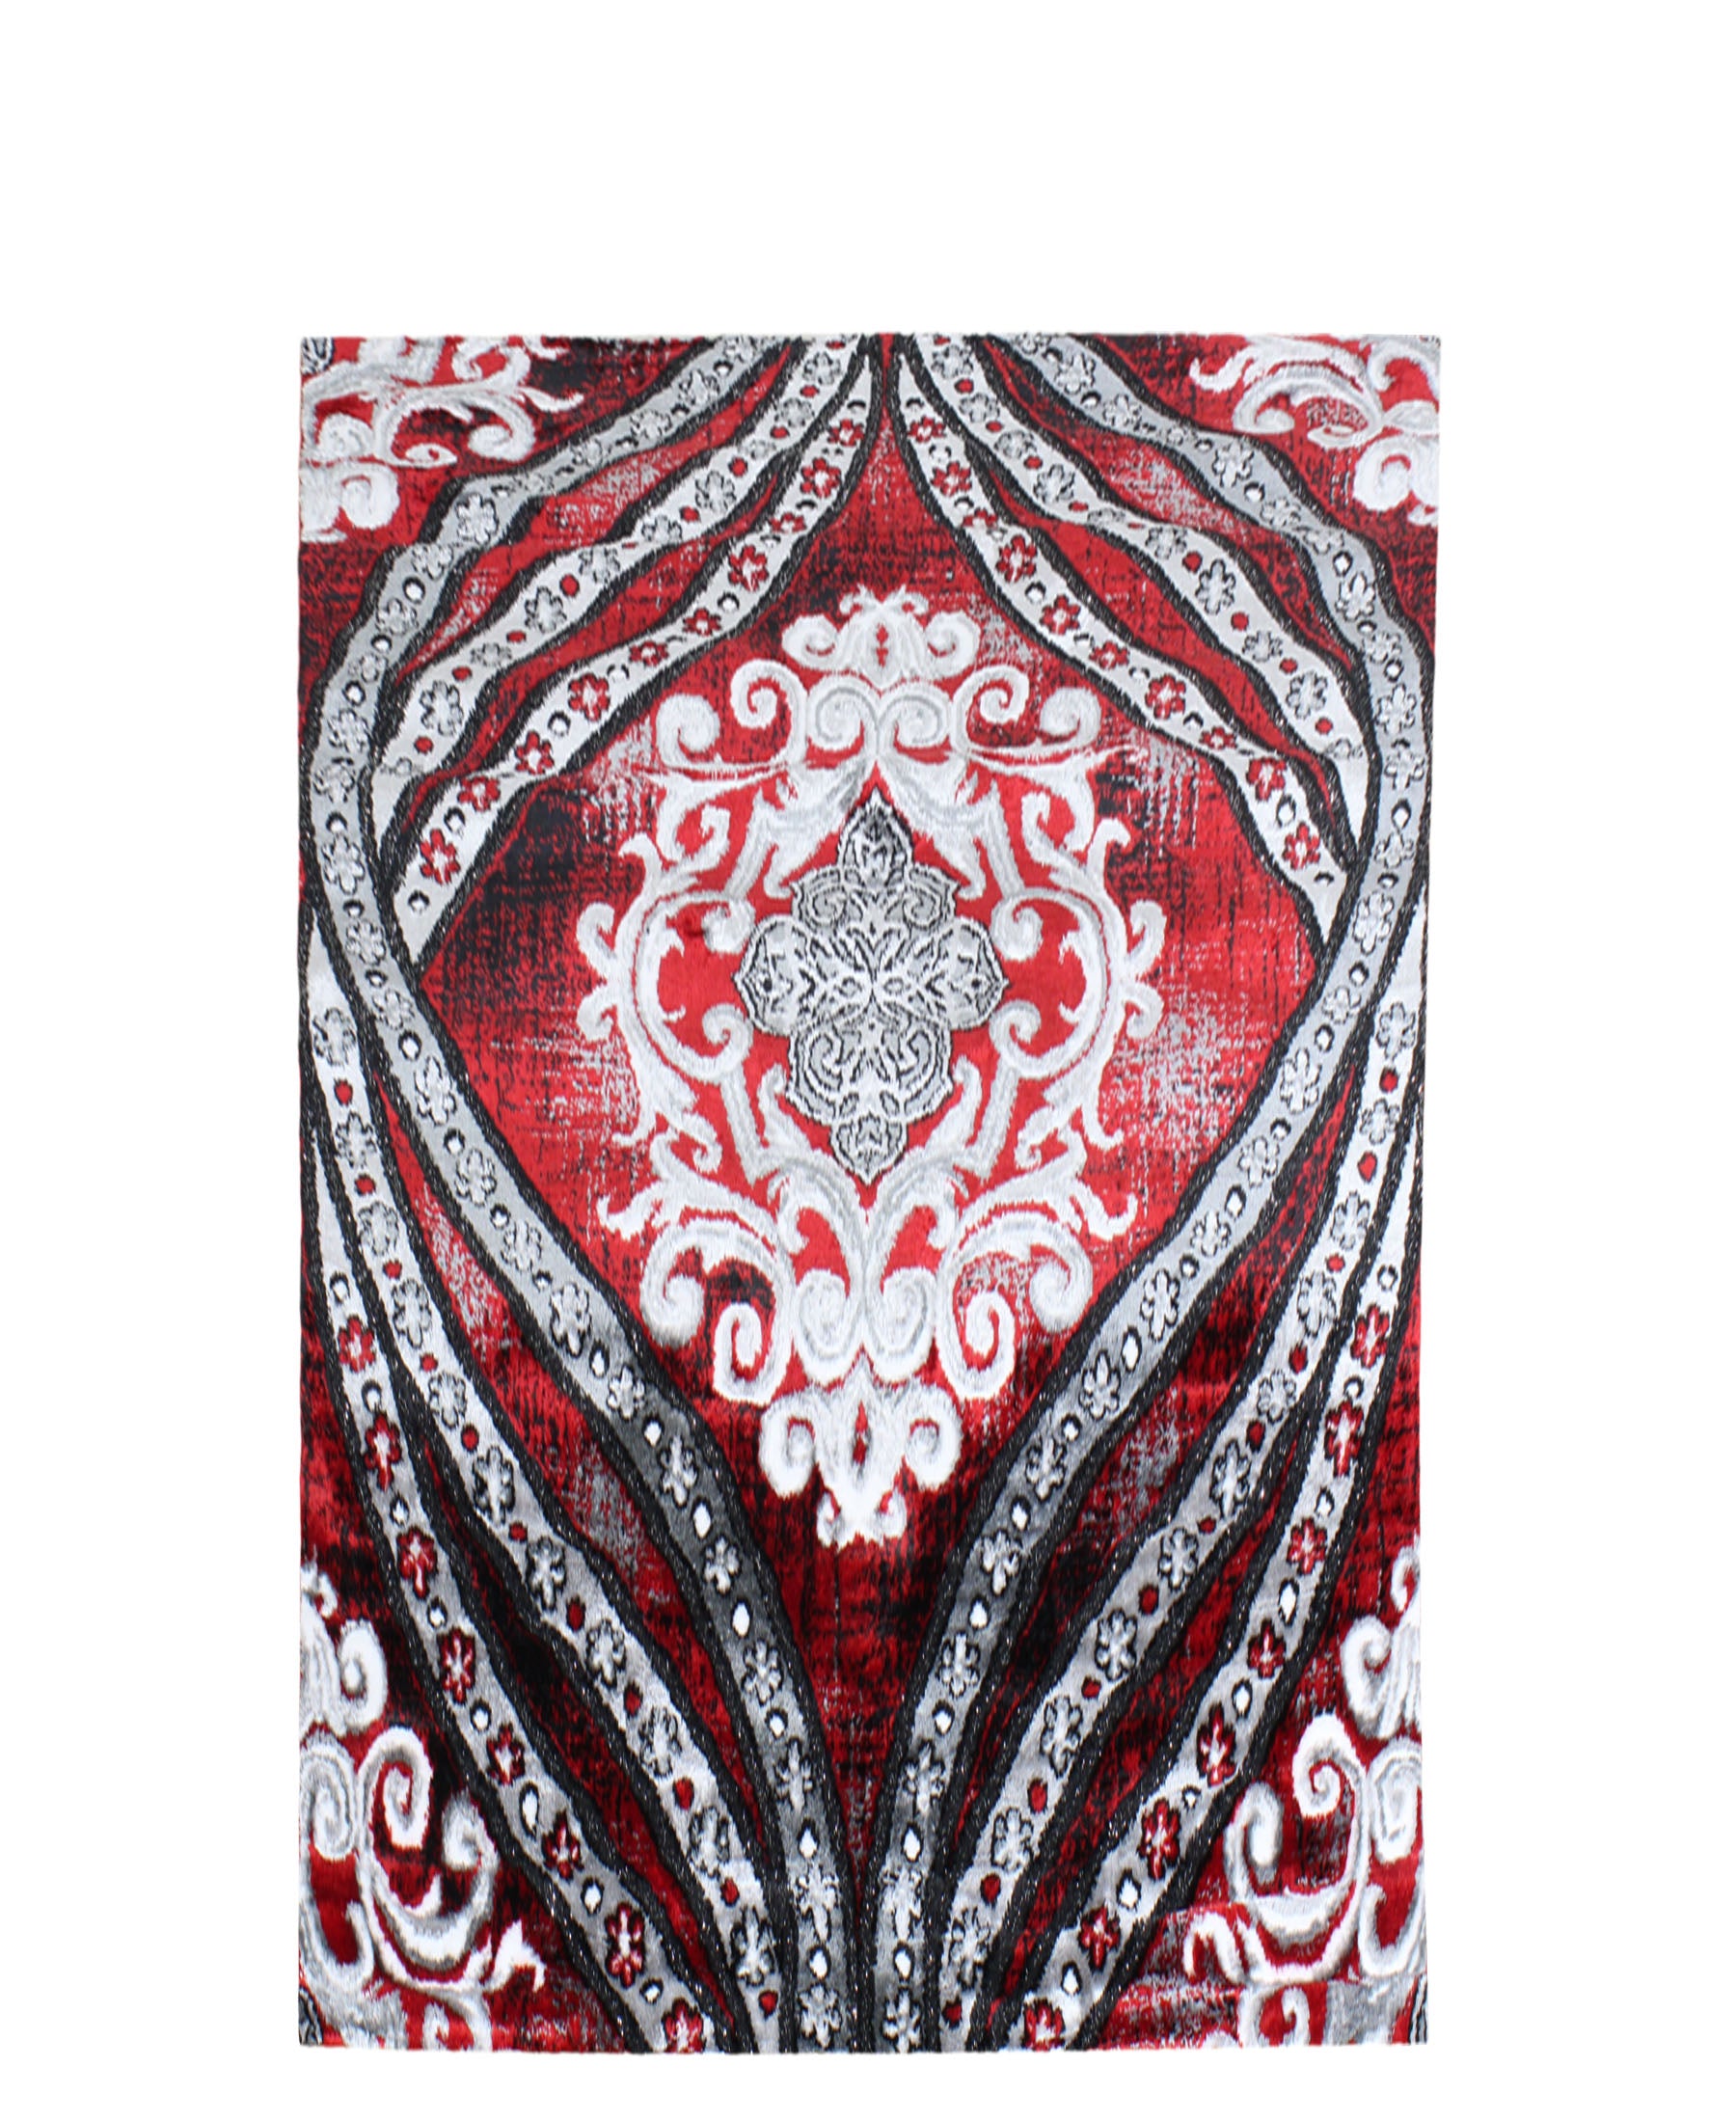 Izmir Antique Carpet 1500mm x 2000mm - Red